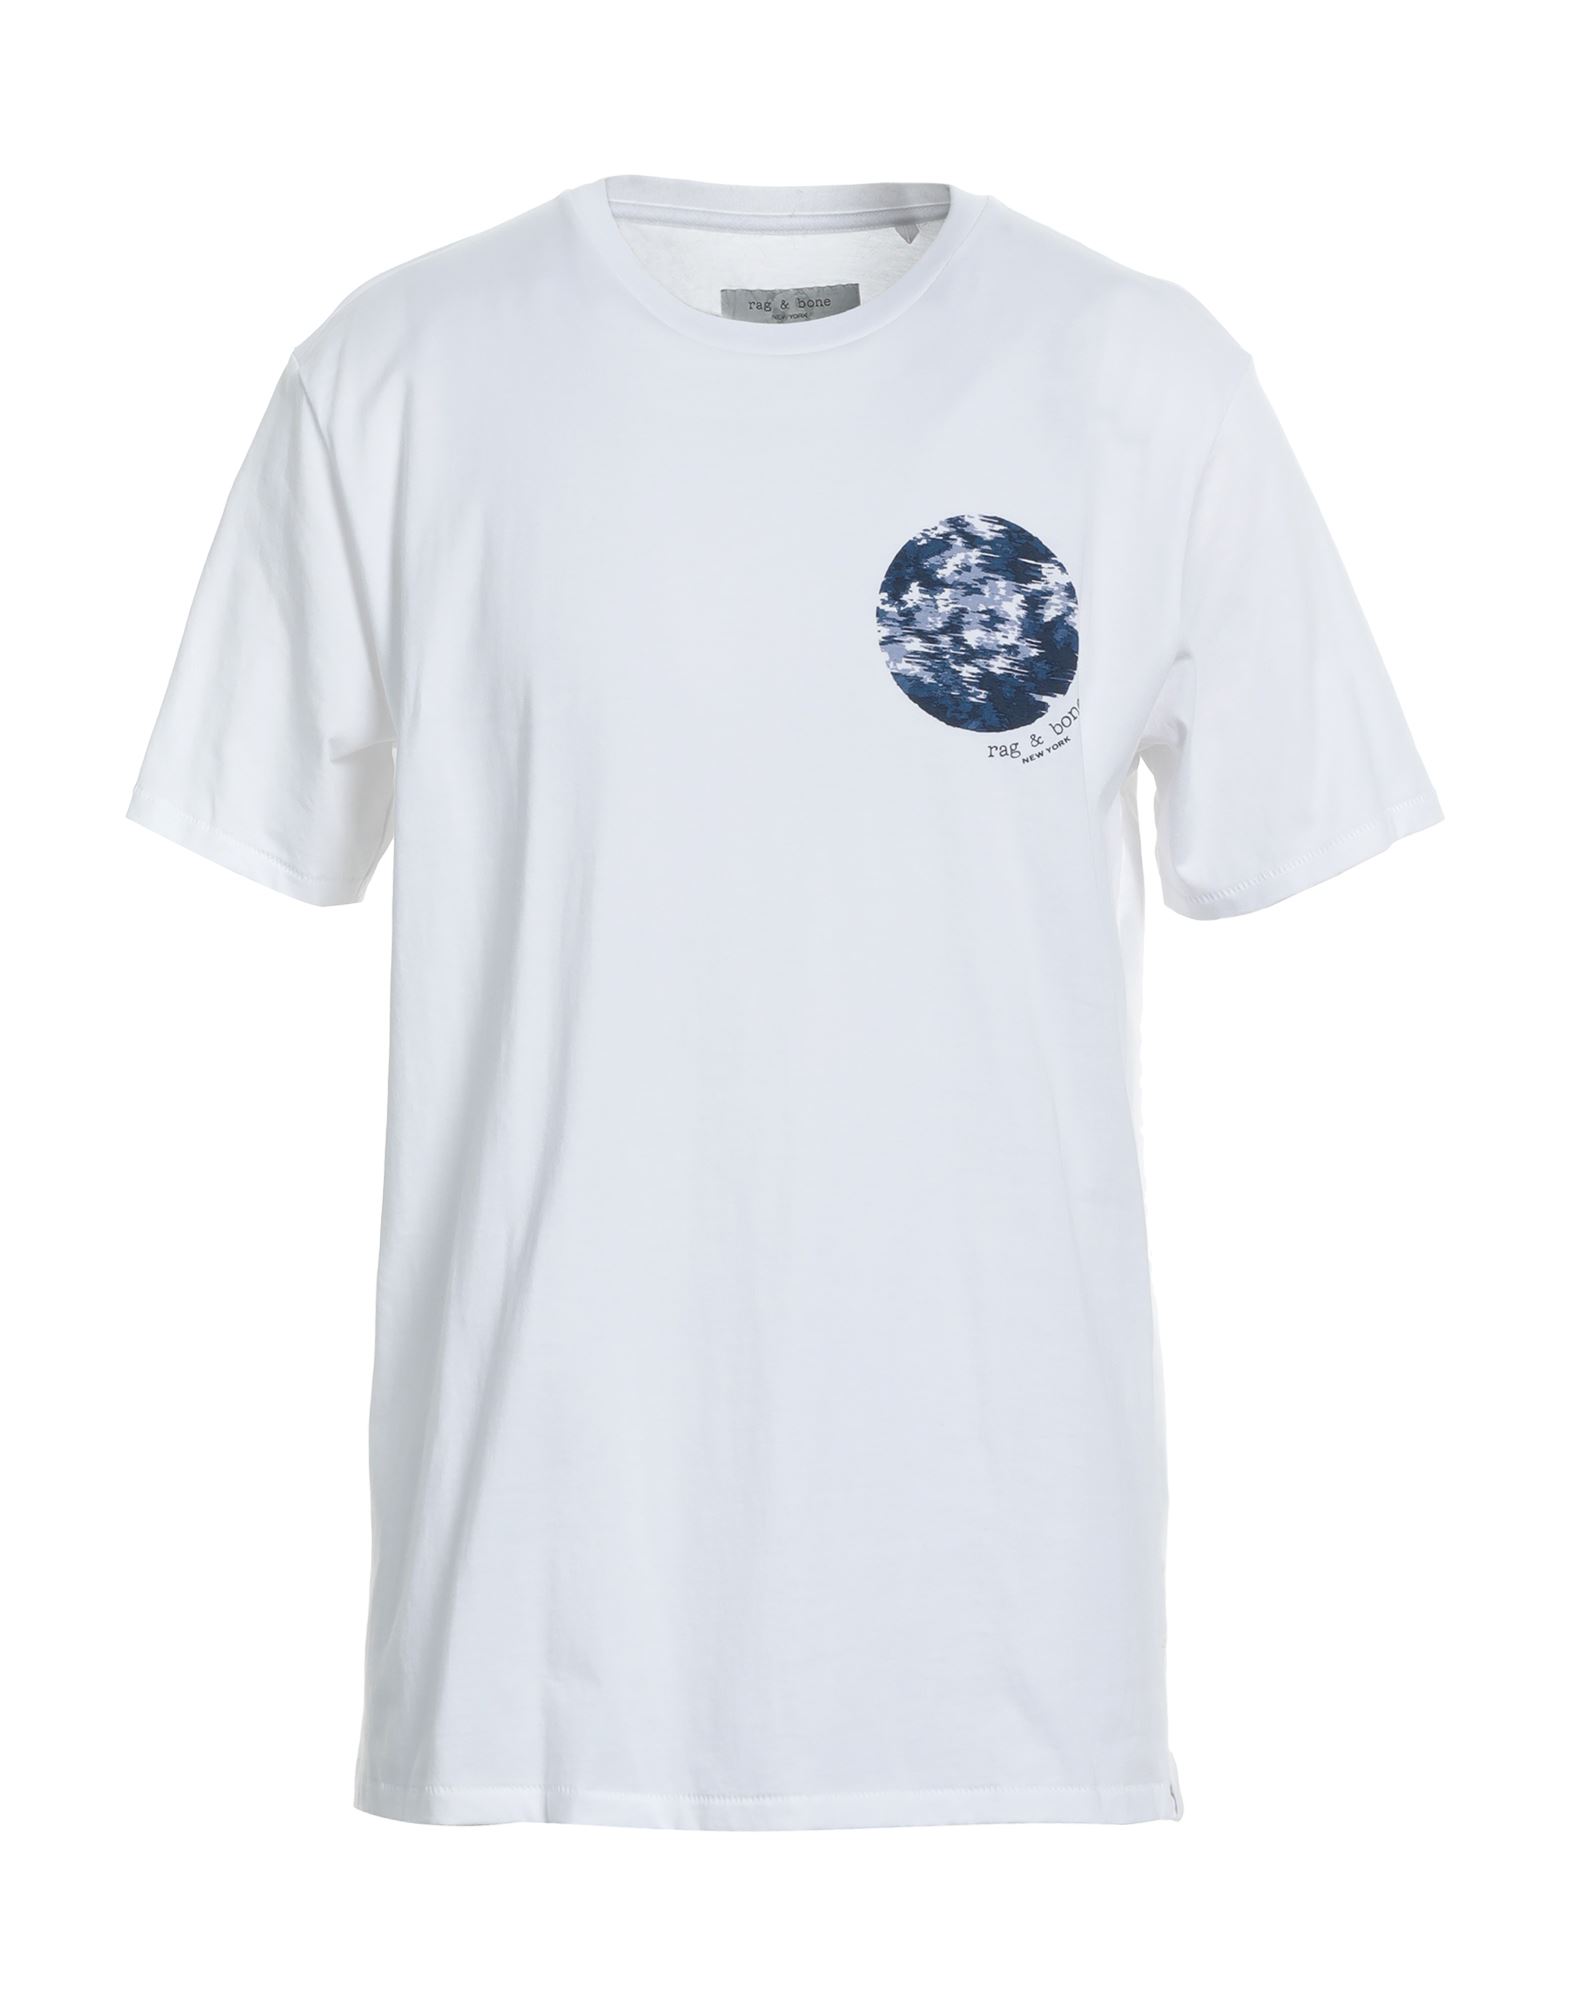 Rag & Bone Man T-shirt White Size L Organic Cotton